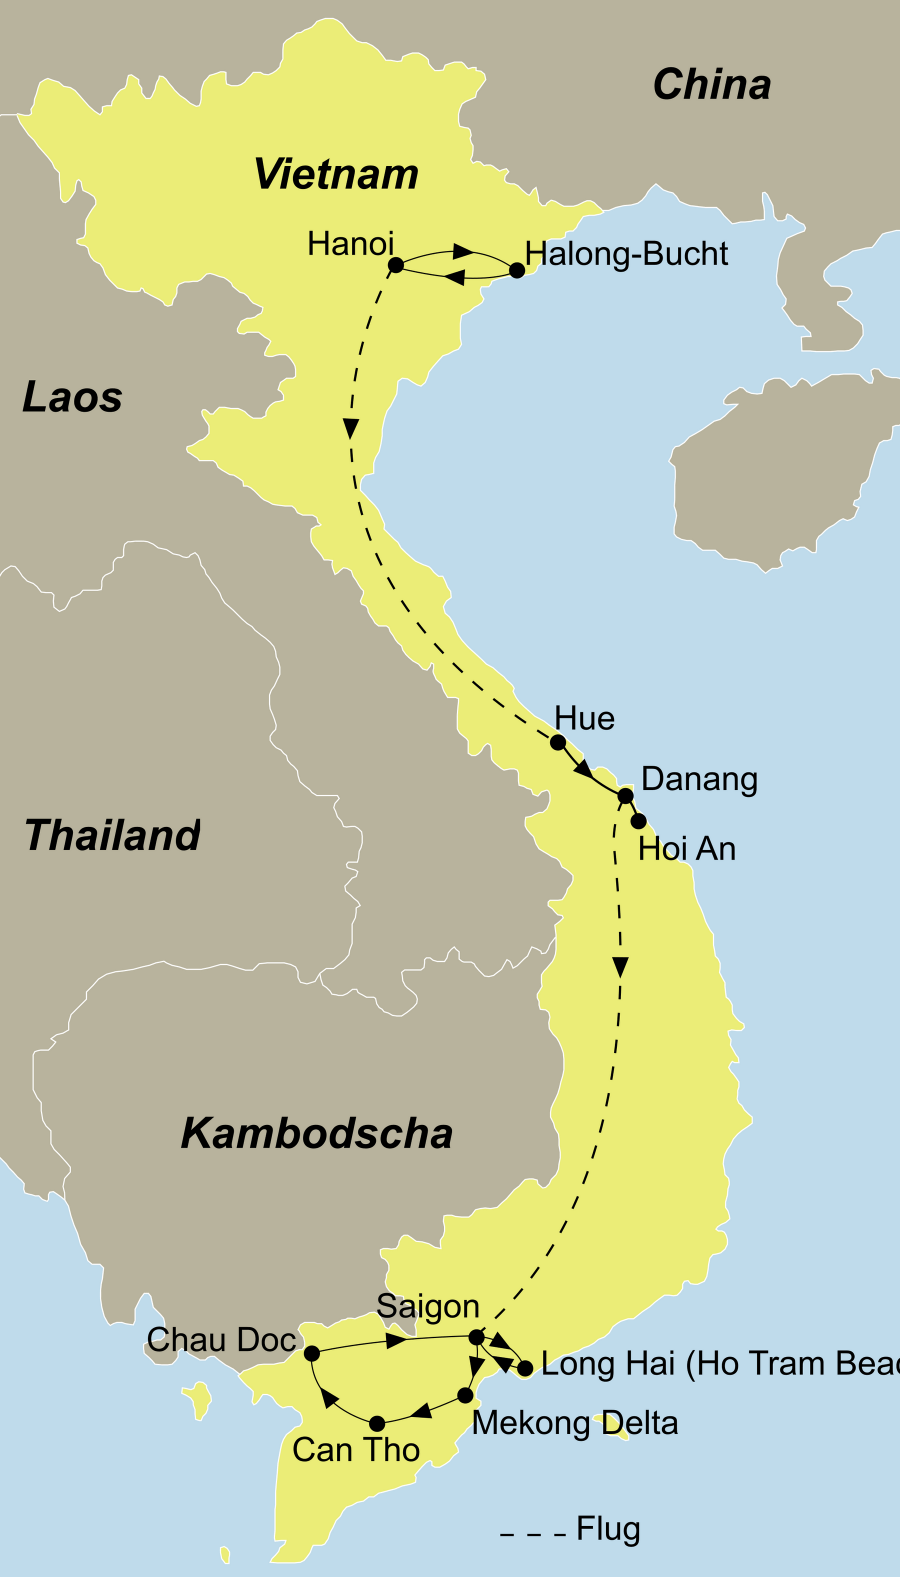 Der Reiseverlauf zu unserer Vietnam Reise - Best of Vietnam startet in Hanoi und endet in Saigon.